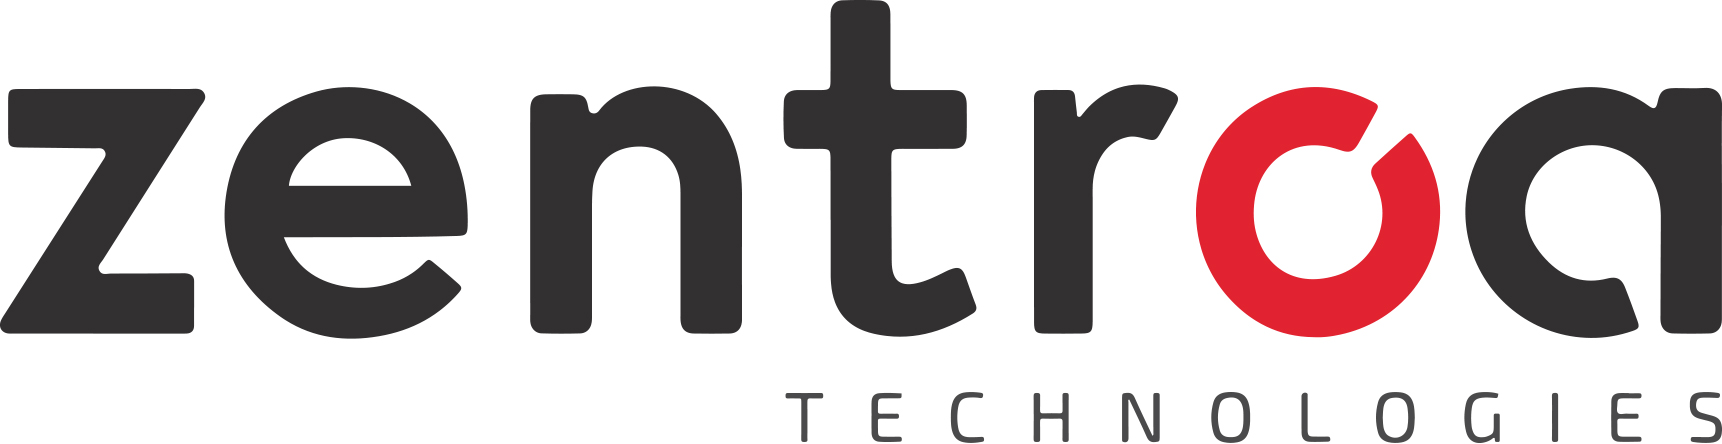 Zentroa Technologies